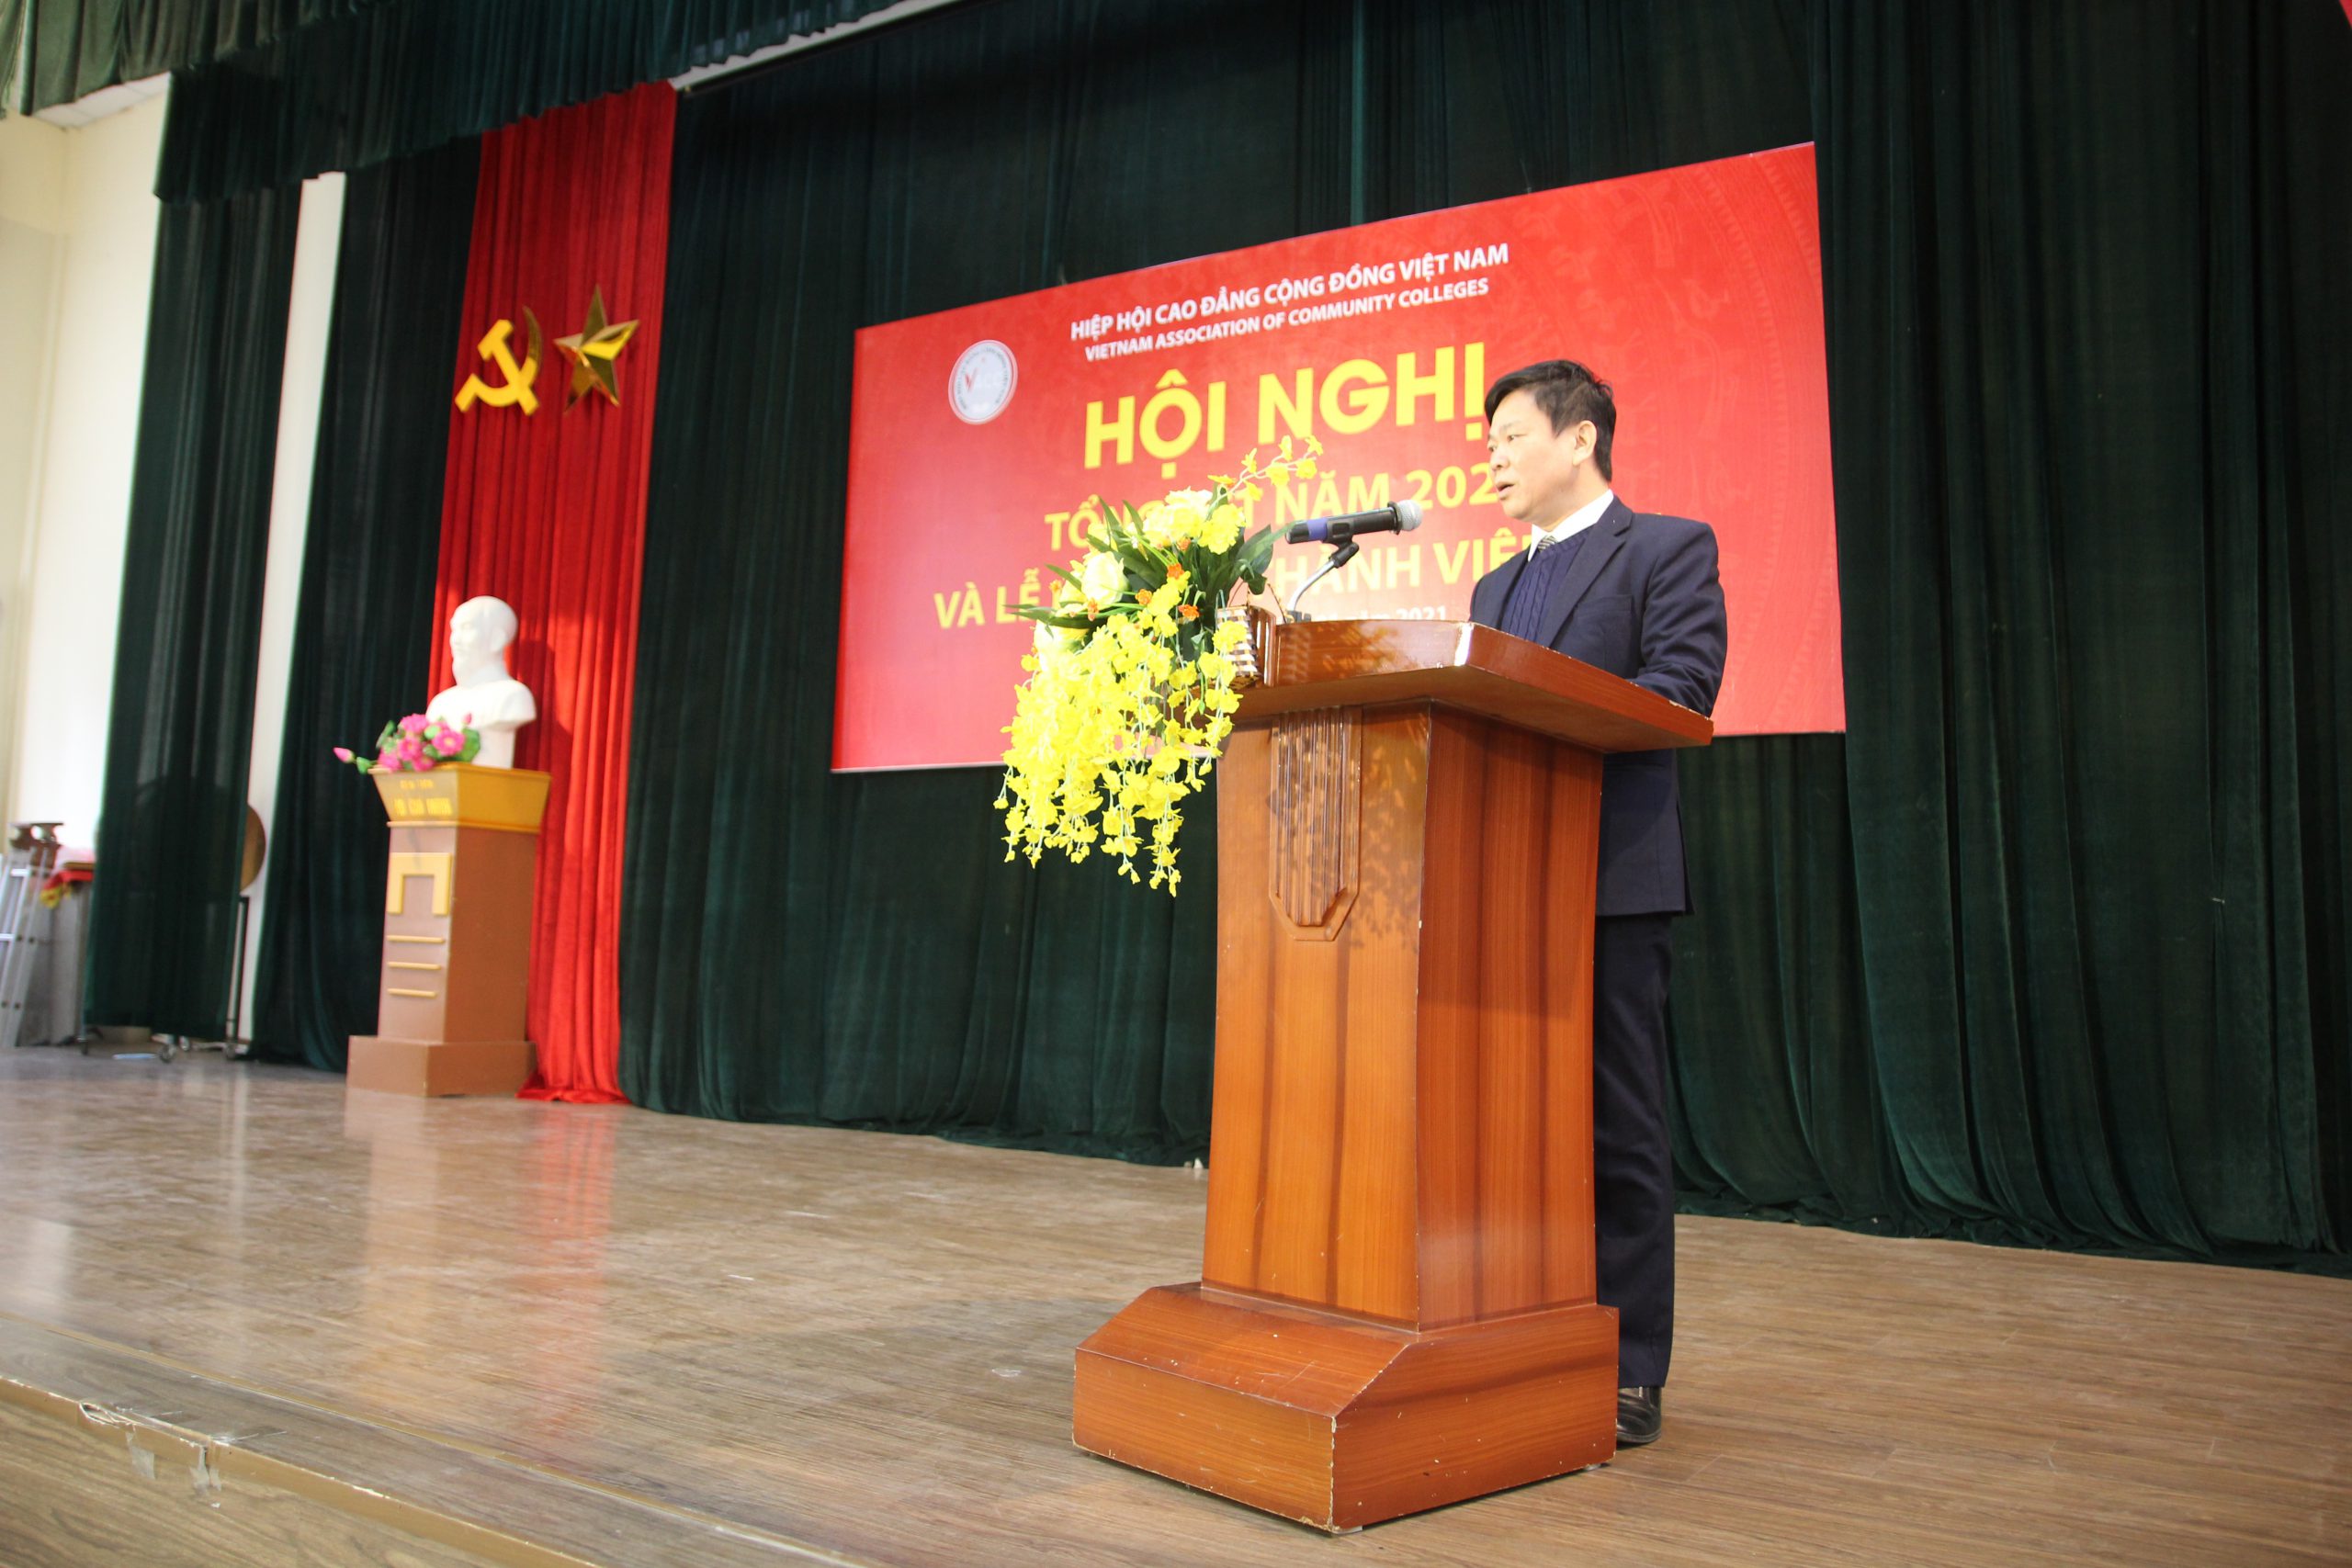 Hội nghị tổng kết năm 2020 của Hiệp hội Cao đẳng Cộng đồng Việt Nam - CATD